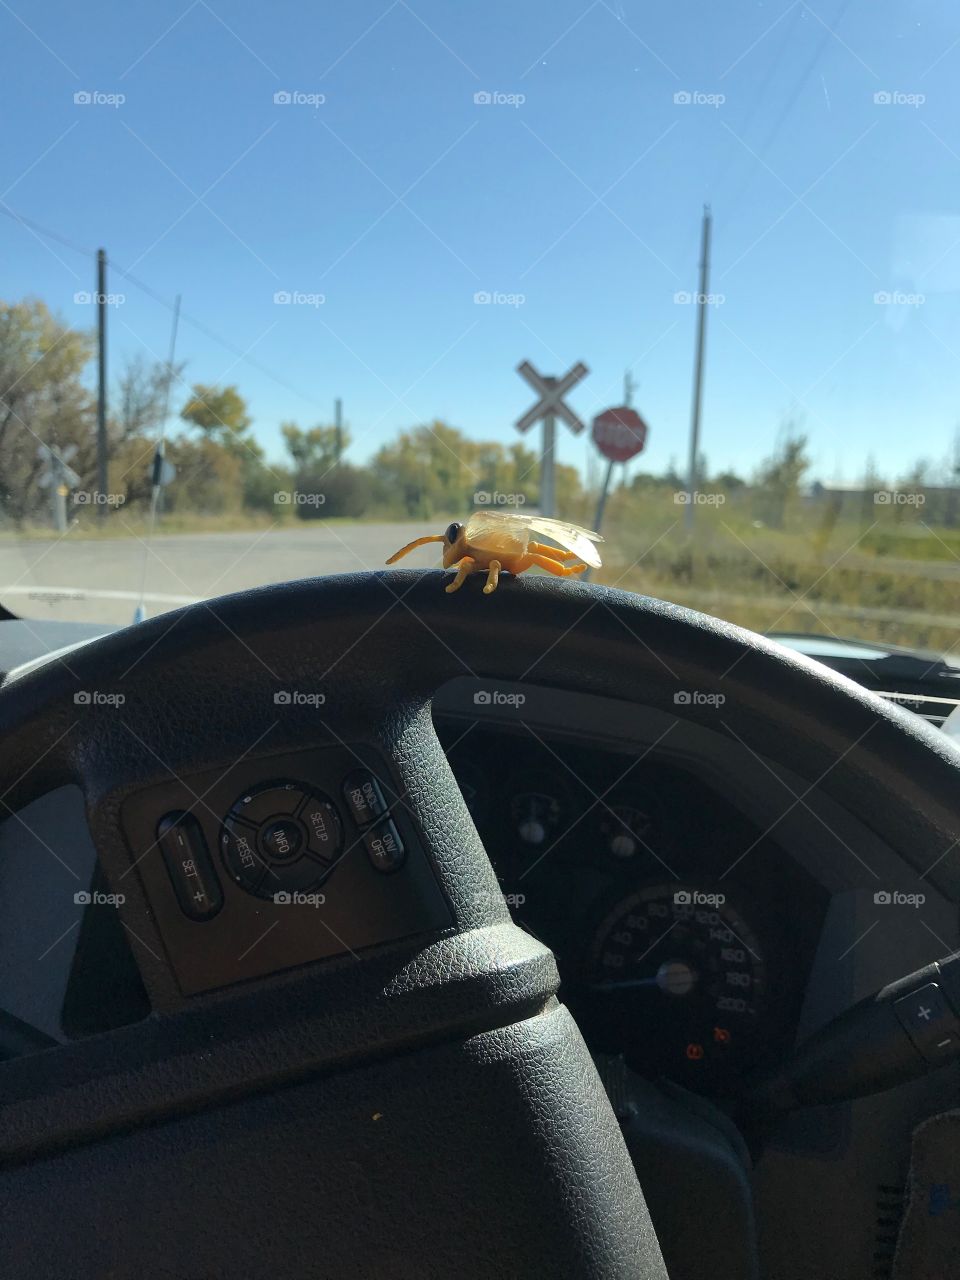 Big bug